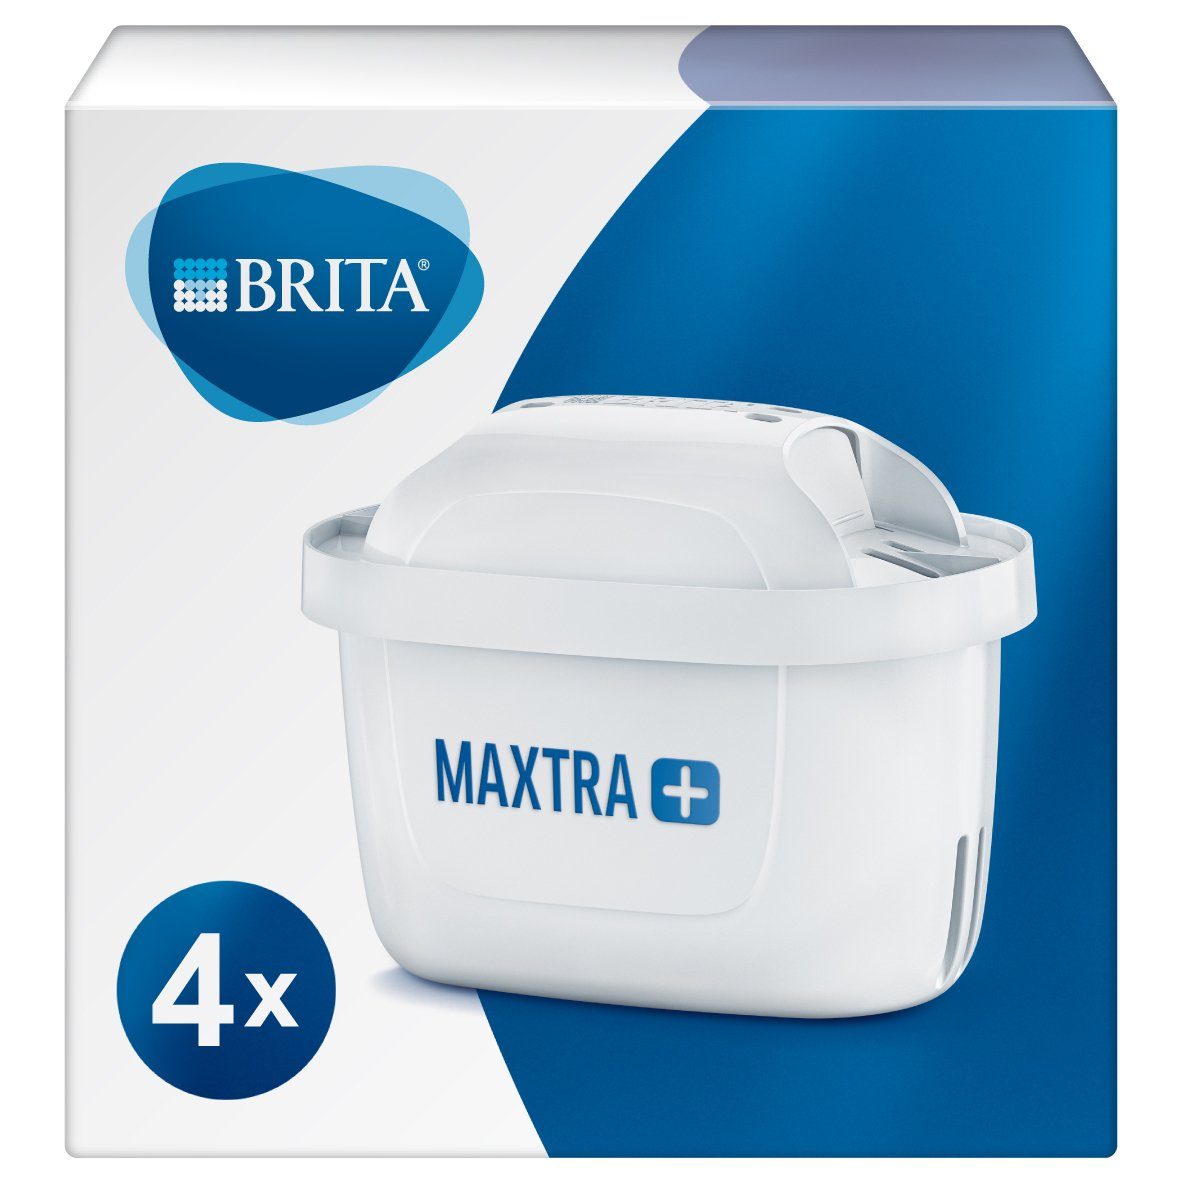 BRITA Wasserfilter MAXTRA+ Pack4, reduziert Kalk, Chlor, Blei & Kupfer im  Leitungswasser